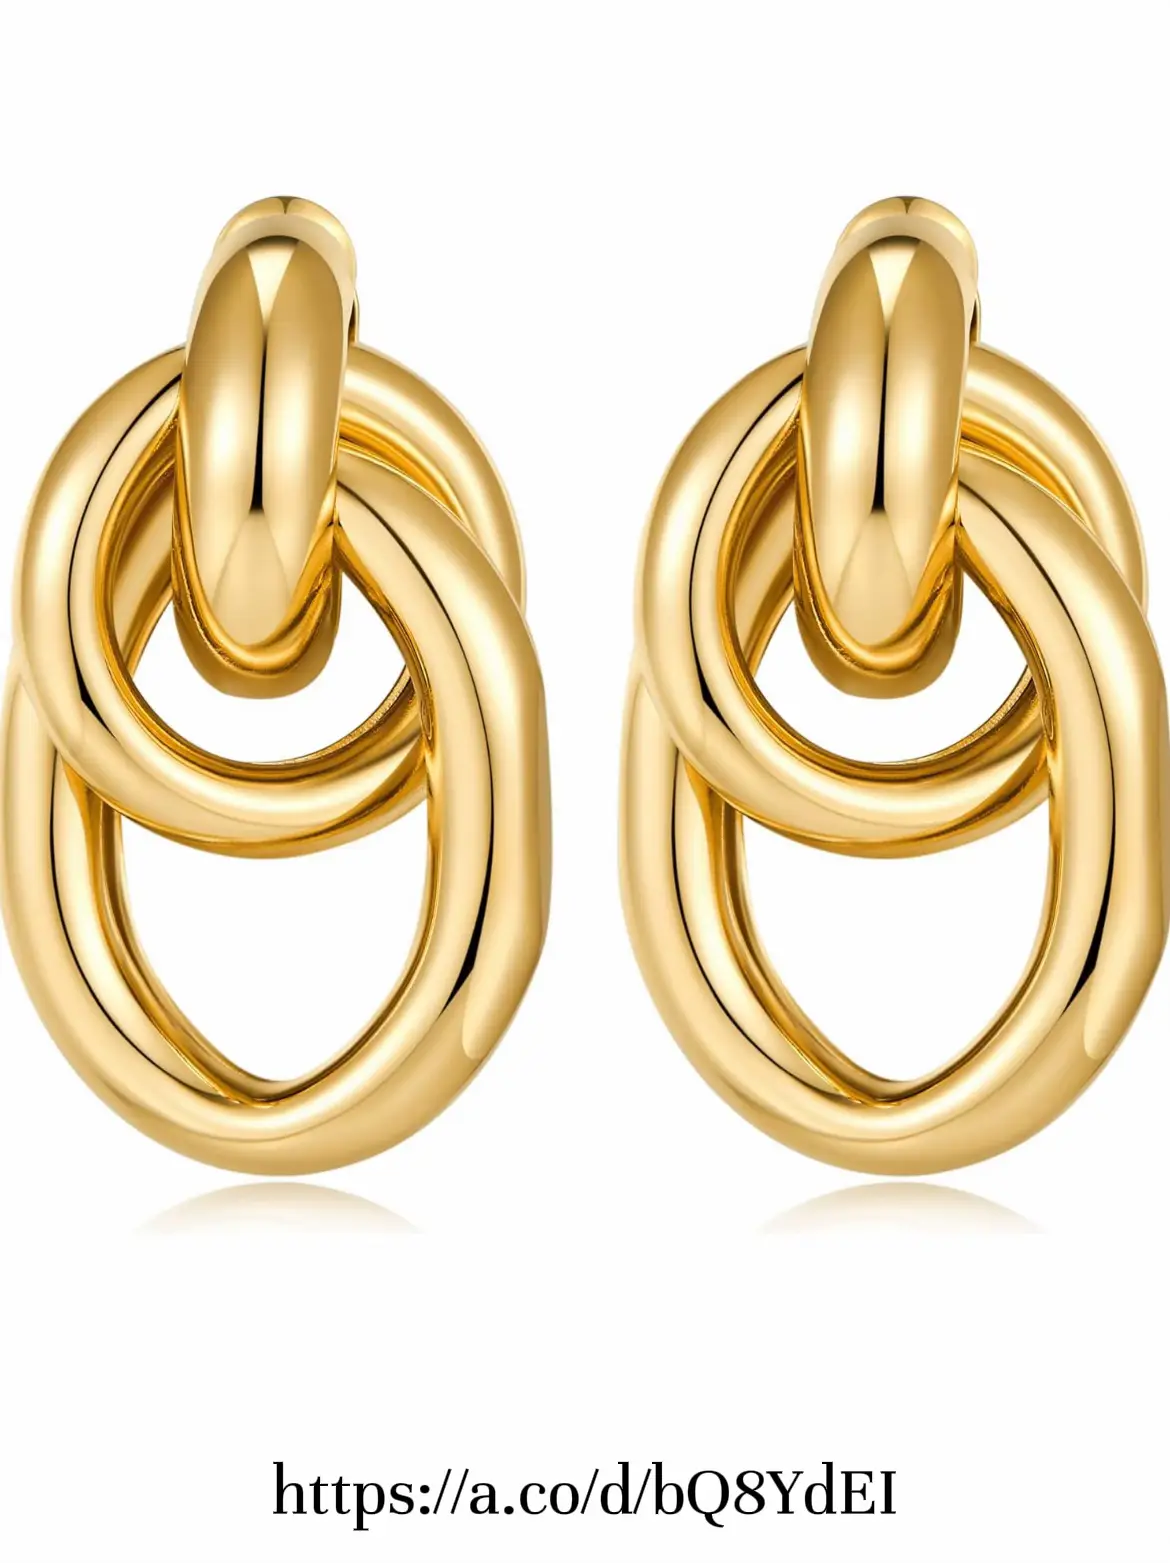 PAVOI 14K Gold Convertible Link Earrings for Women | Paperclip Link Chain  Earrings | Drop Dangle Earrings